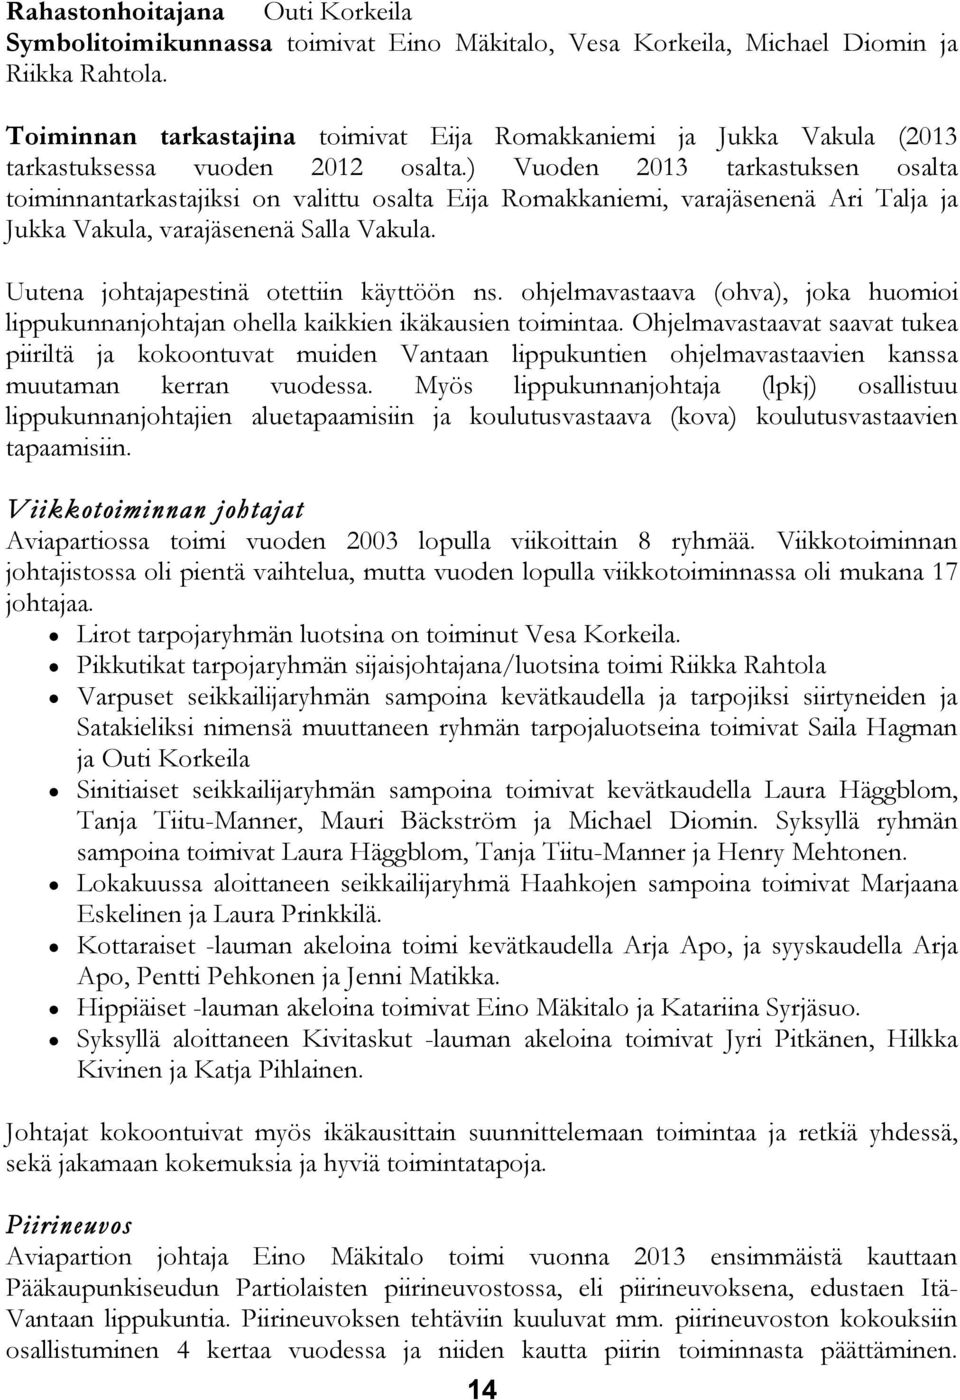 ) Vuoden 2013 tarkastuksen osalta toiminnantarkastajiksi on valittu osalta Eija Romakkaniemi, varajäsenenä Ari Talja ja Jukka Vakula, varajäsenenä Salla Vakula.